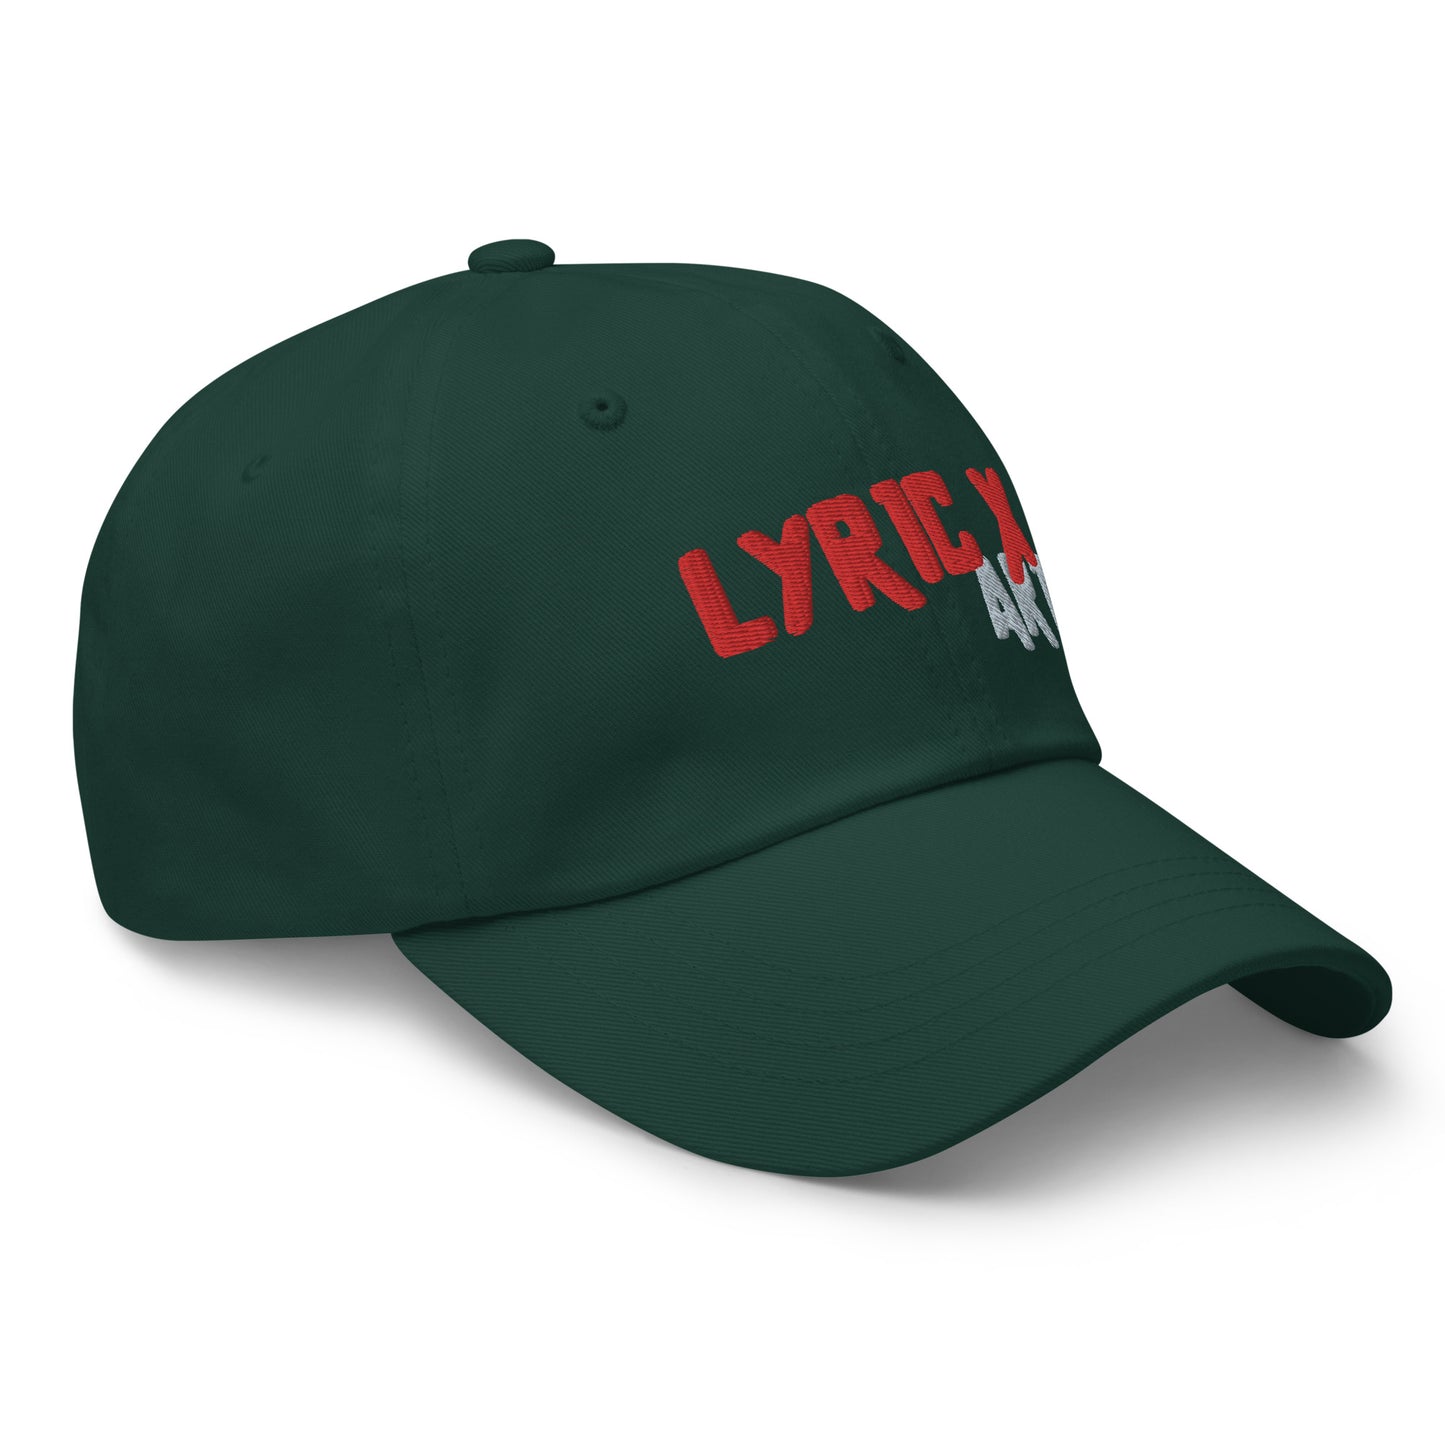 Lyric X Art Logo Red & Silver Dad Hat - lyricxart